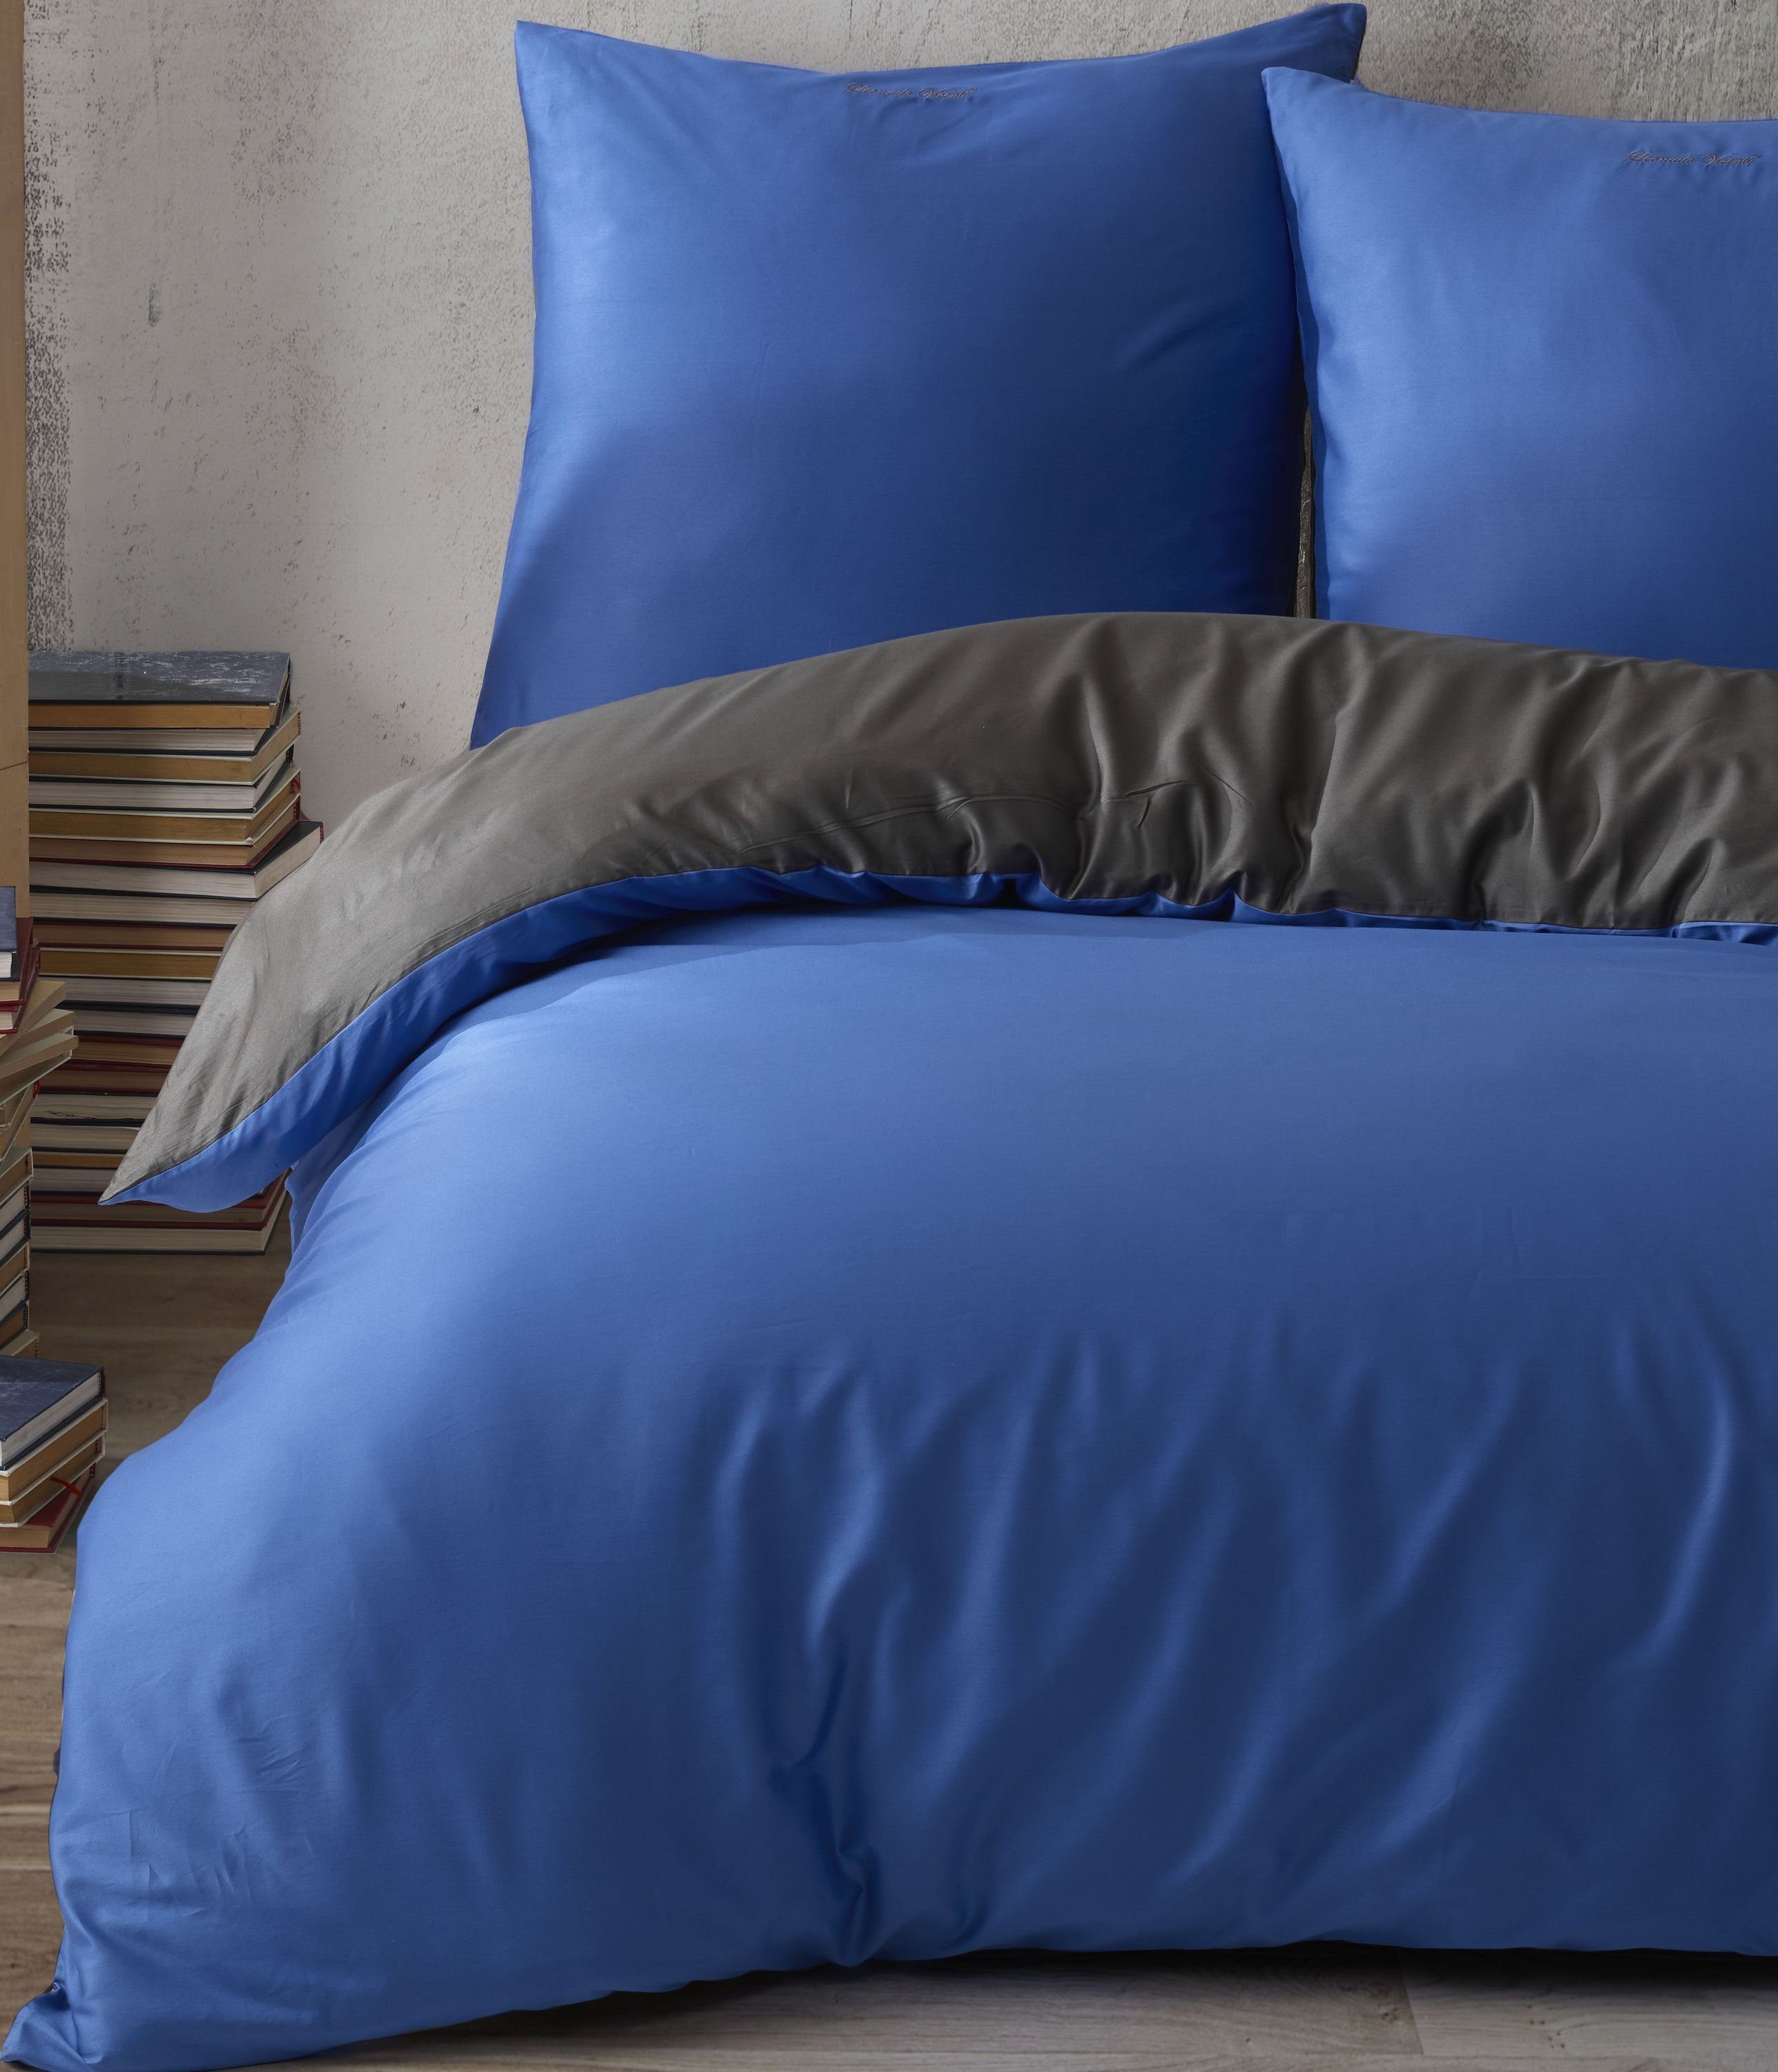 Bettwäsche in 200x220 cm online kaufen | OTTO